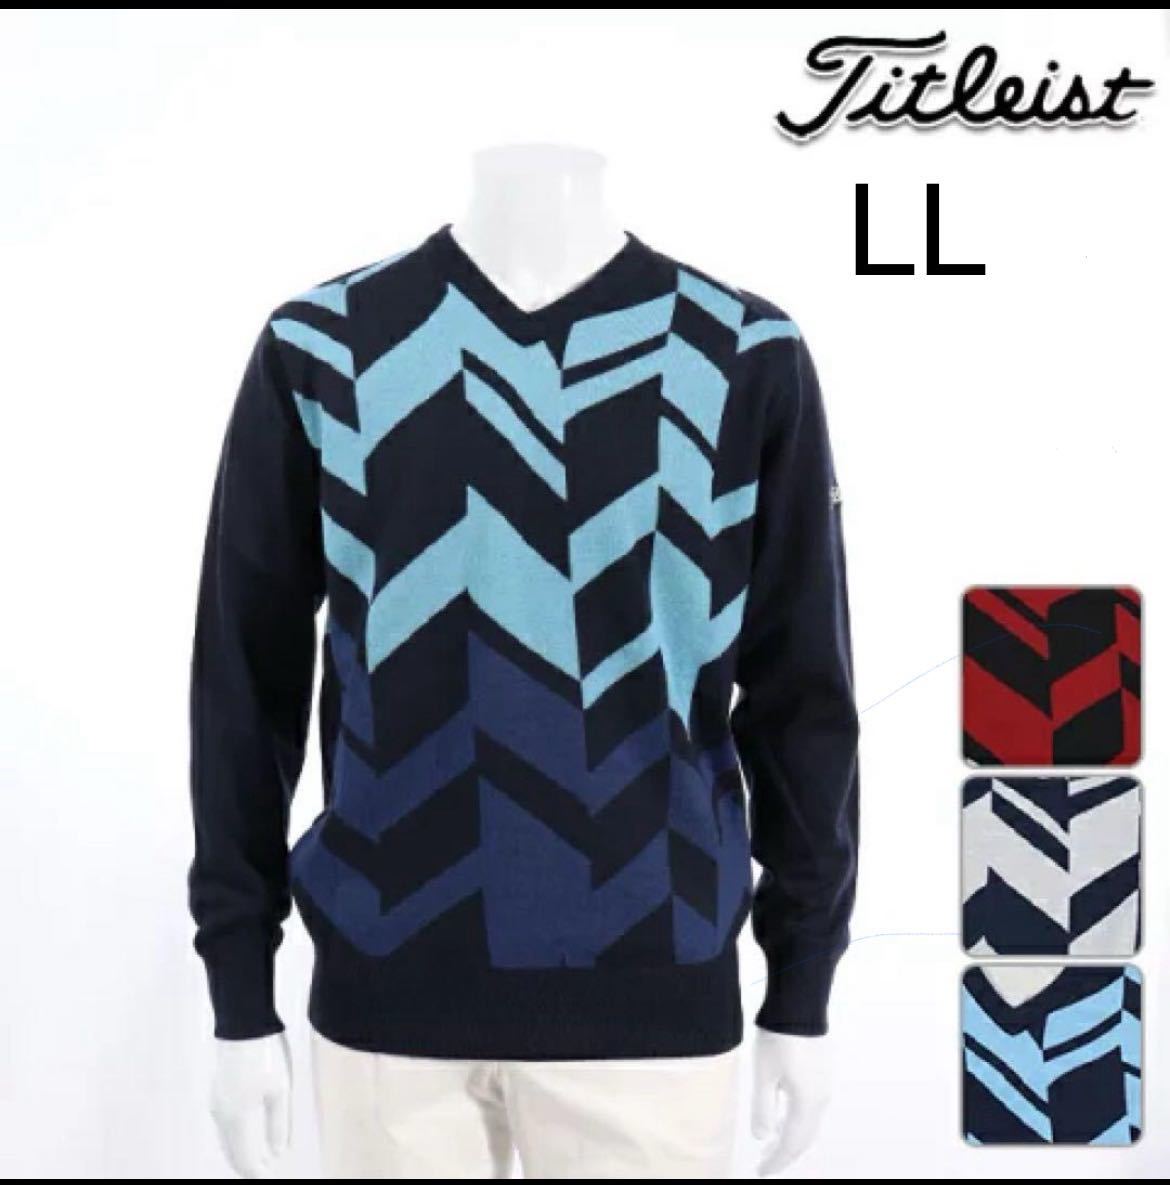  Titleist свитер мужской вязаный LL Golf одежда *5140 вязаный свитер Titleist. способ .. подкладка имеется 